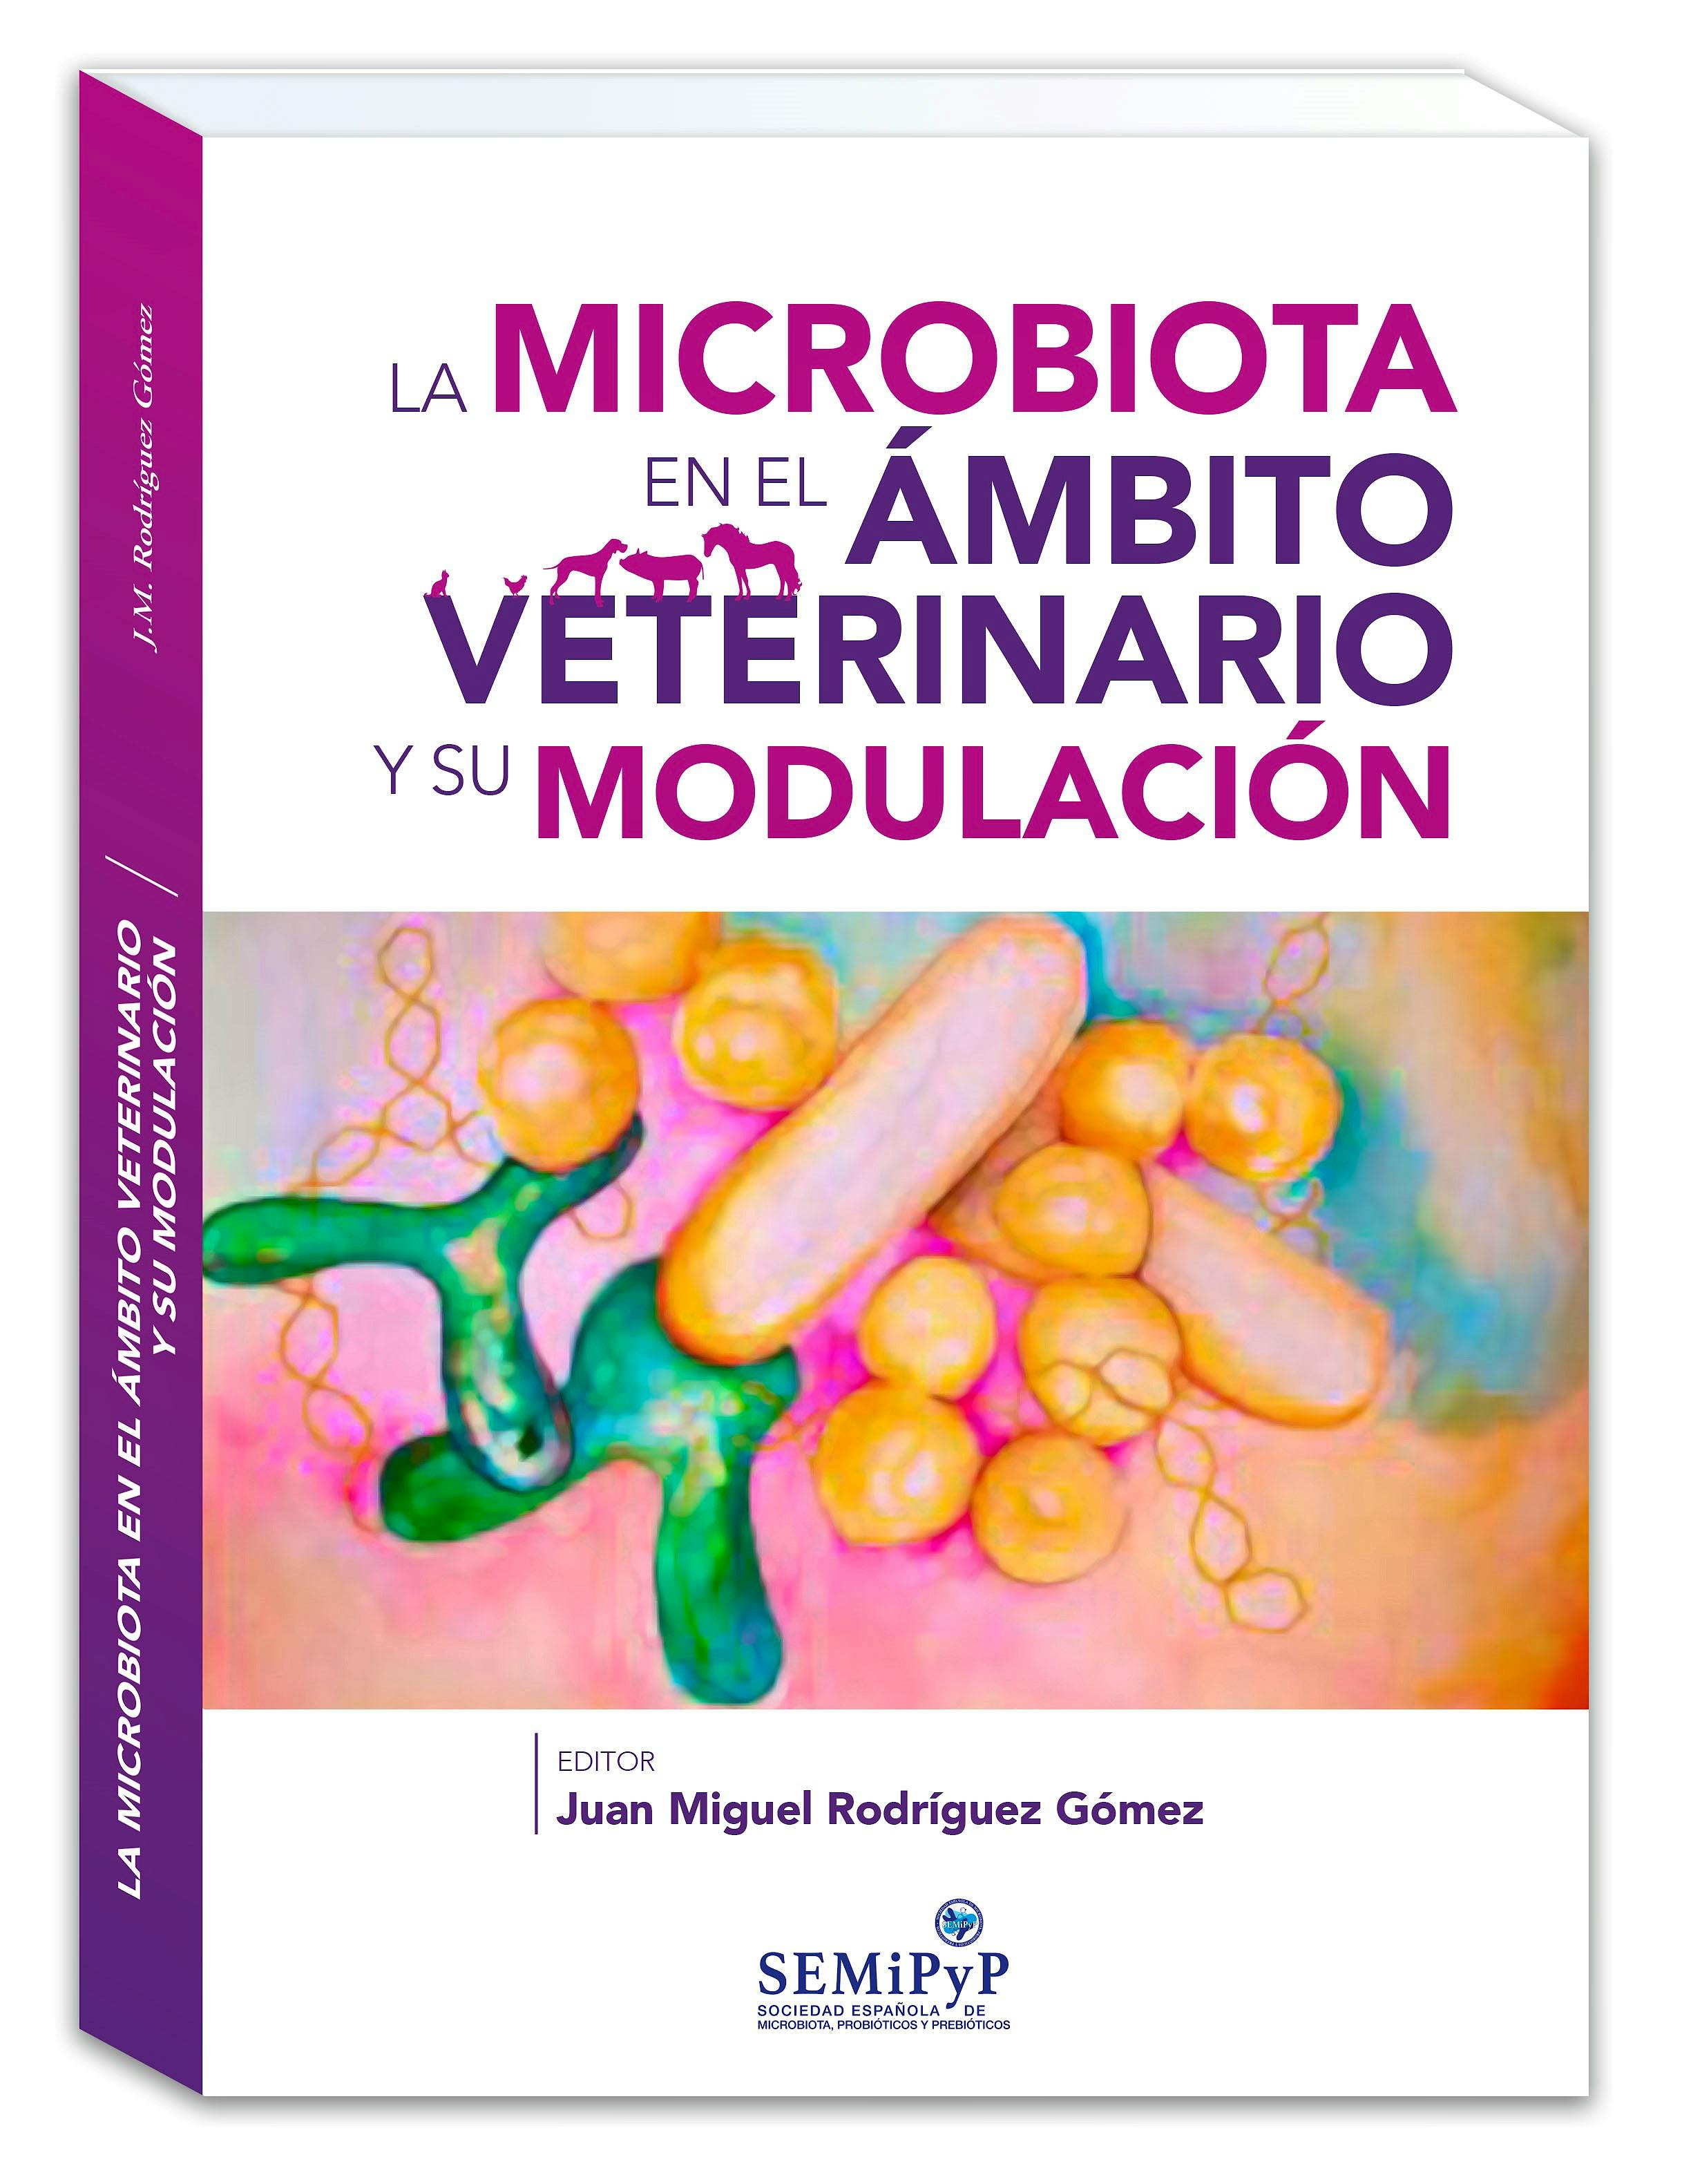 Imagen de portada del libro La microbiota en el ámbito veterinario y su modulación